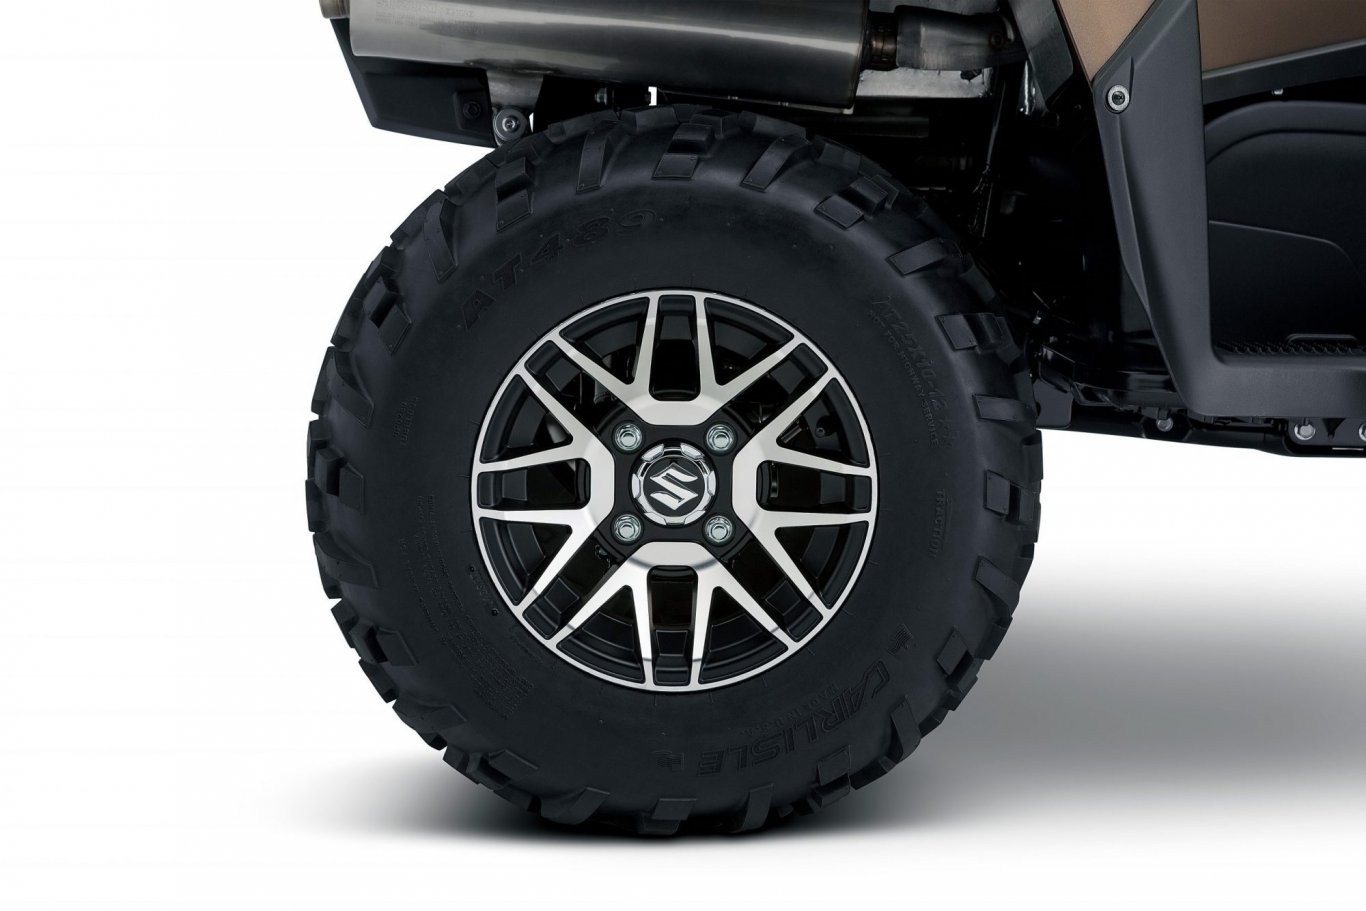 2022 Suzuki KingQuad 500XPZ True Timber Kanati, Black Mag Wheels